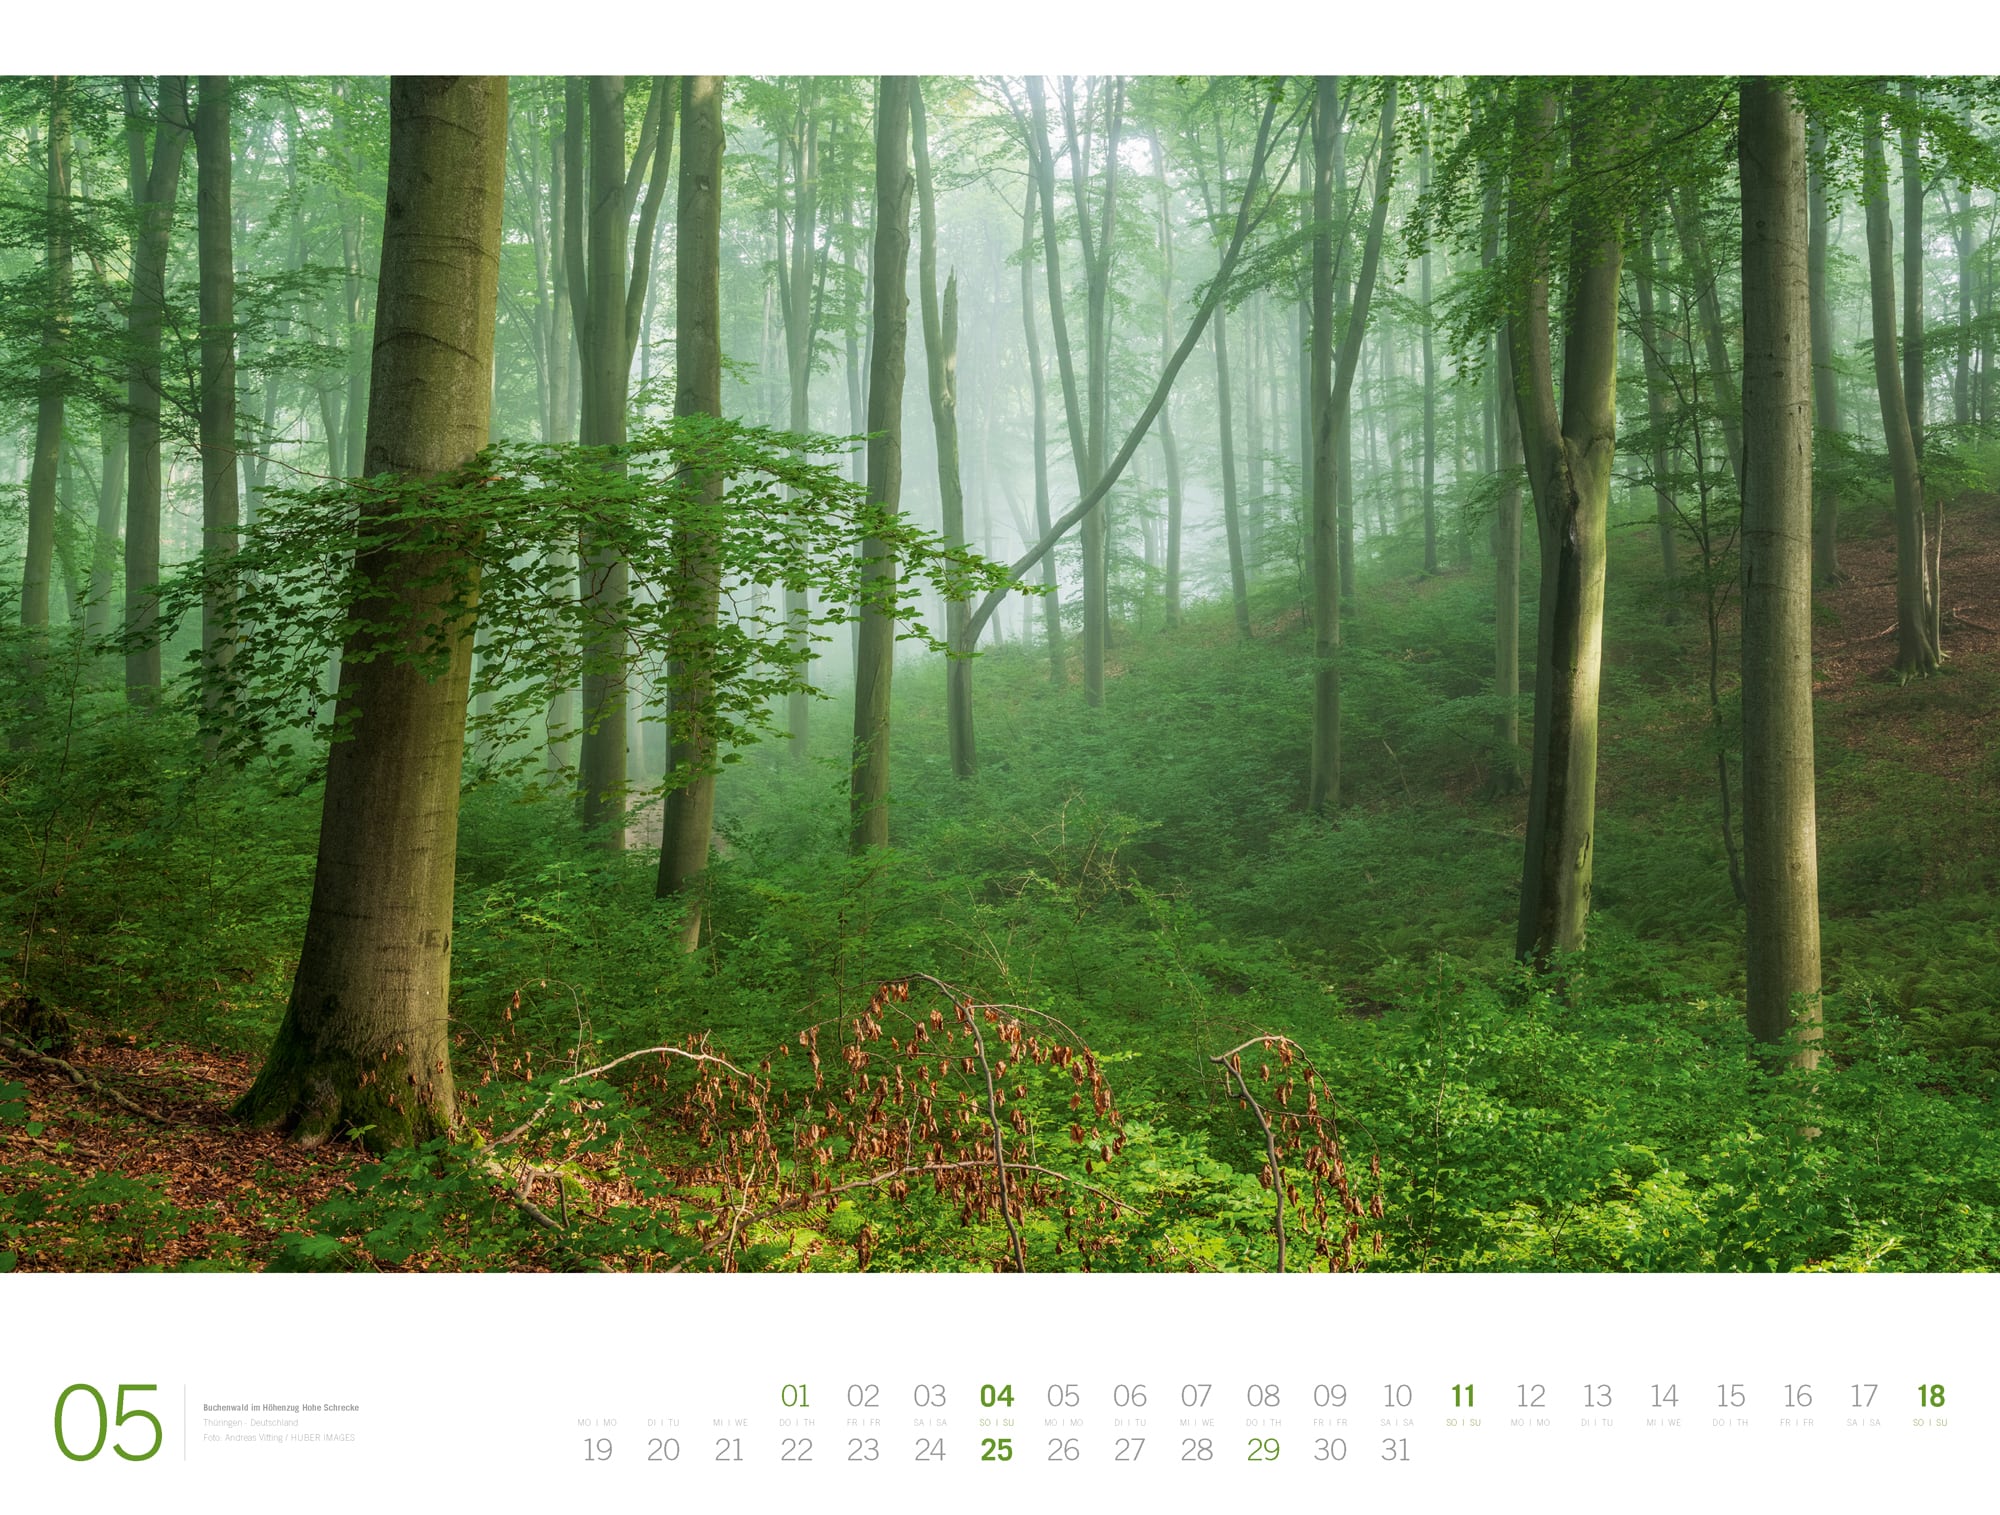 Ackermann Calendar Forest - Gallery 2025 - Inside View 05